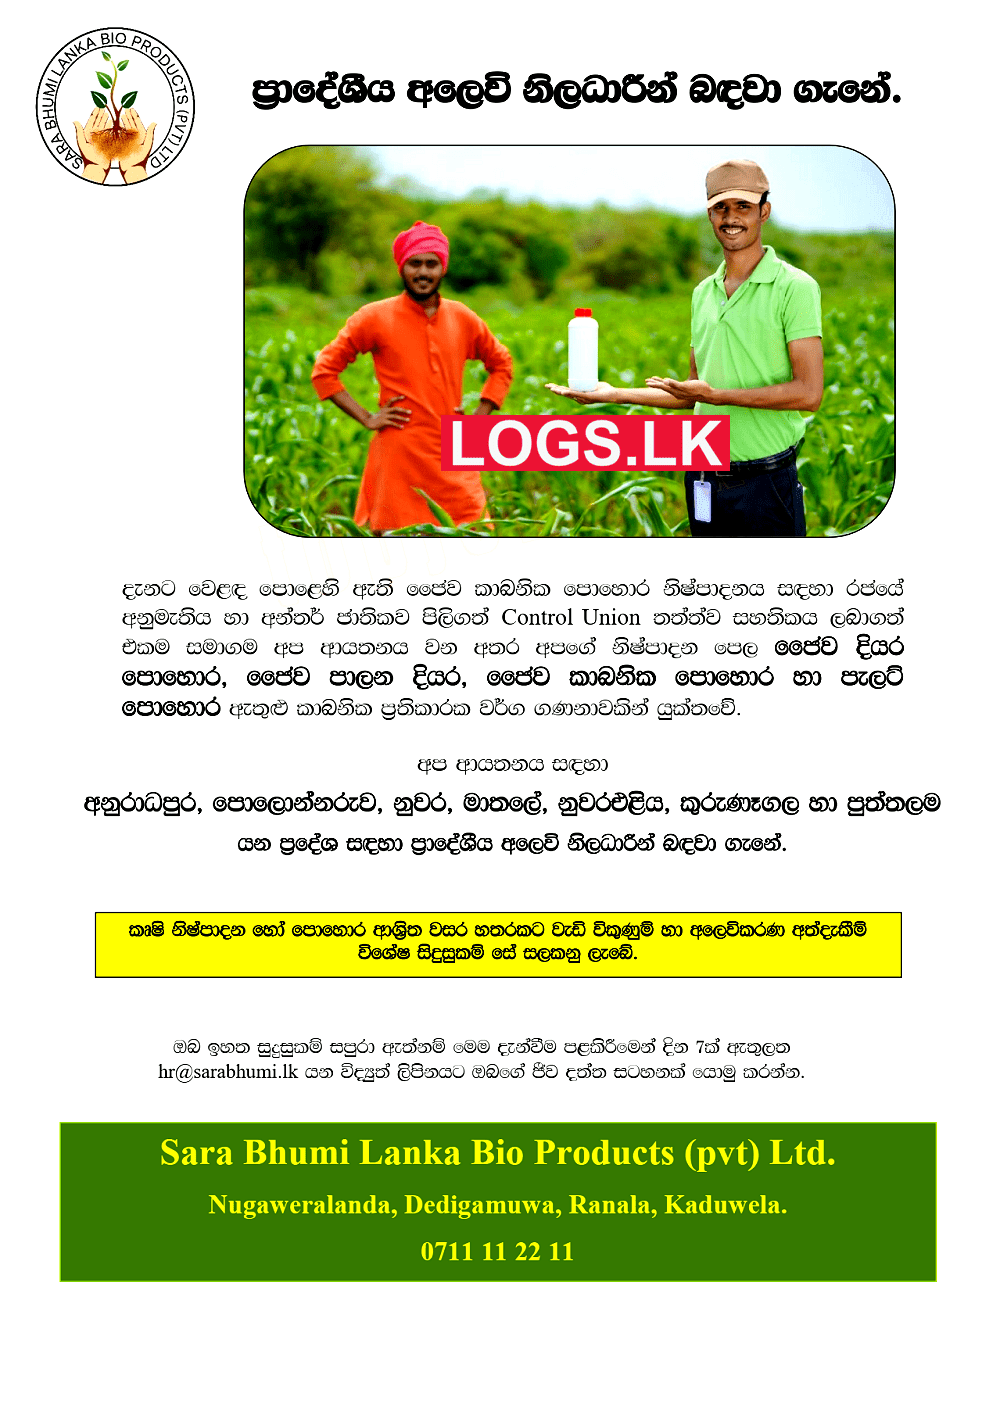 Marketing Officers Vacancies at Sara Bhumi Lanka Bio Products Job Vacancies